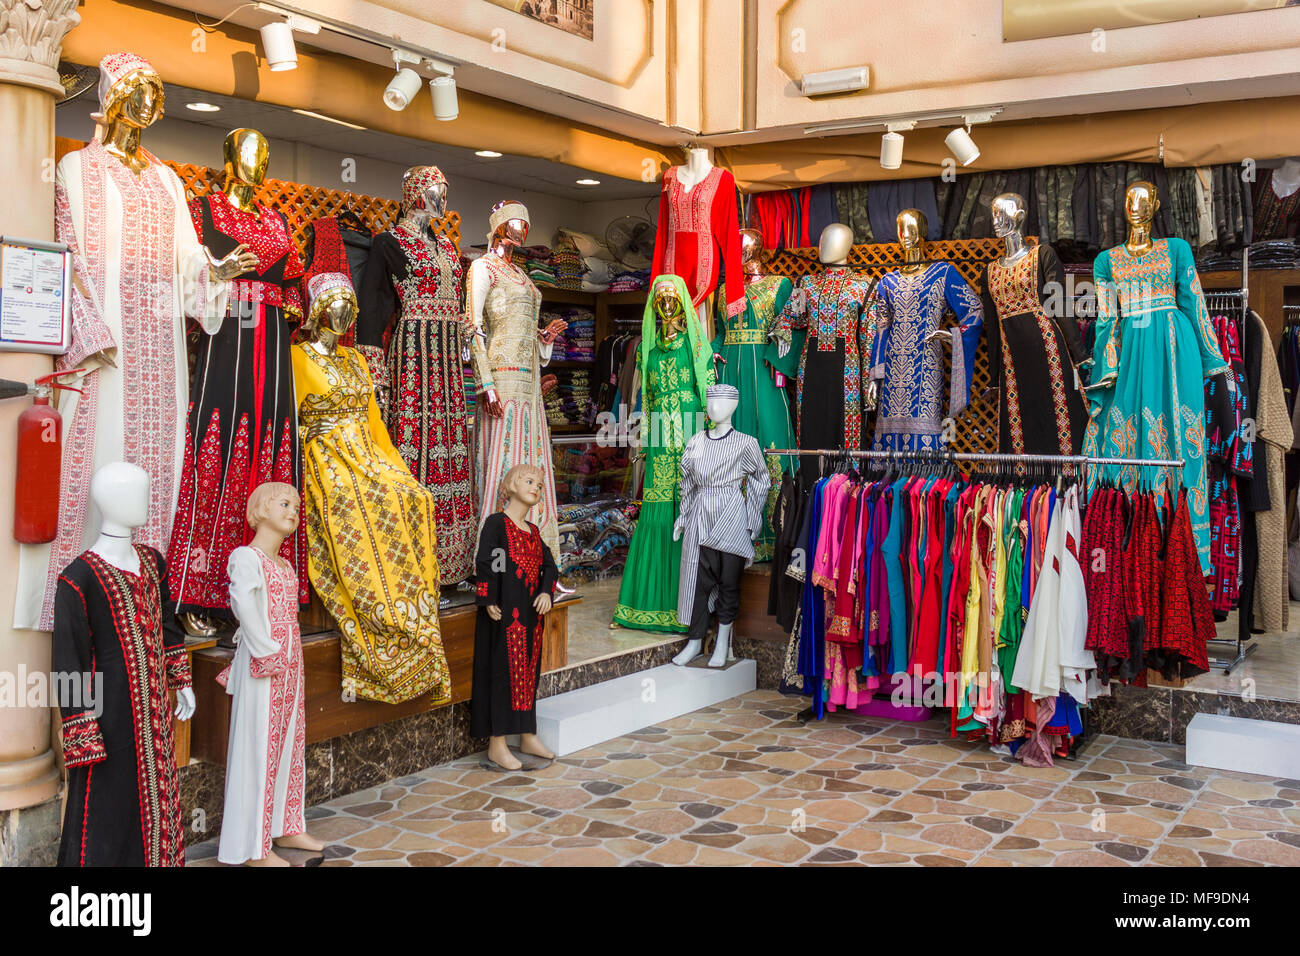 Abu Dhabi, Emiratos Árabes Unidos de abril ?14, ?2018: tienda de ropa árabe, Emiratos Arabes Unidos delanteros Foto de stock